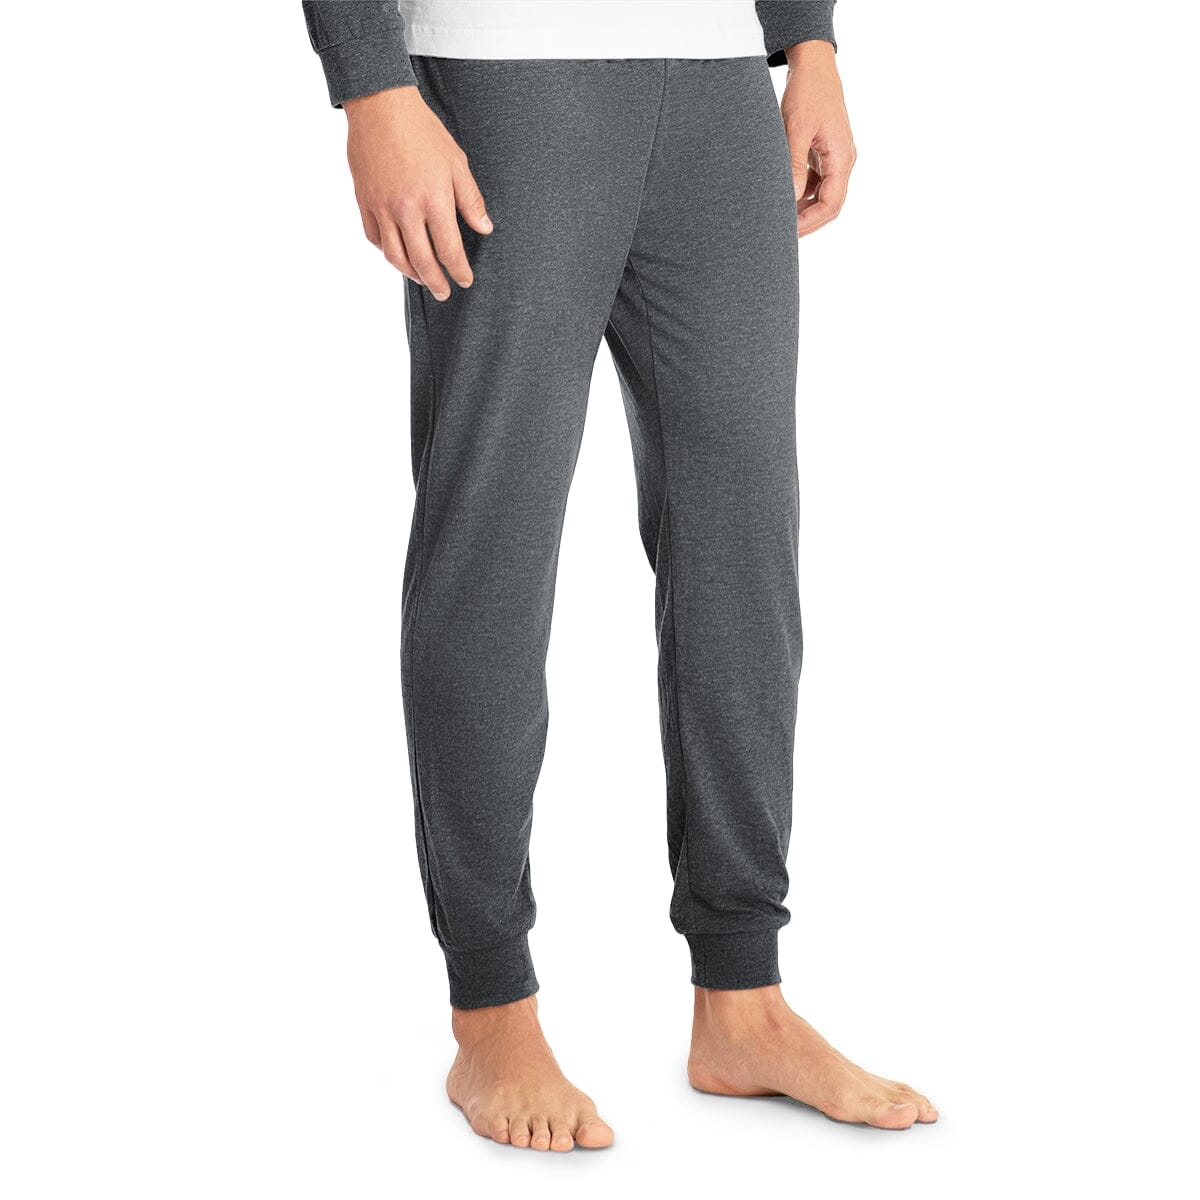 Xmas Box - Men's Pajama Set Clothing Set Printify 